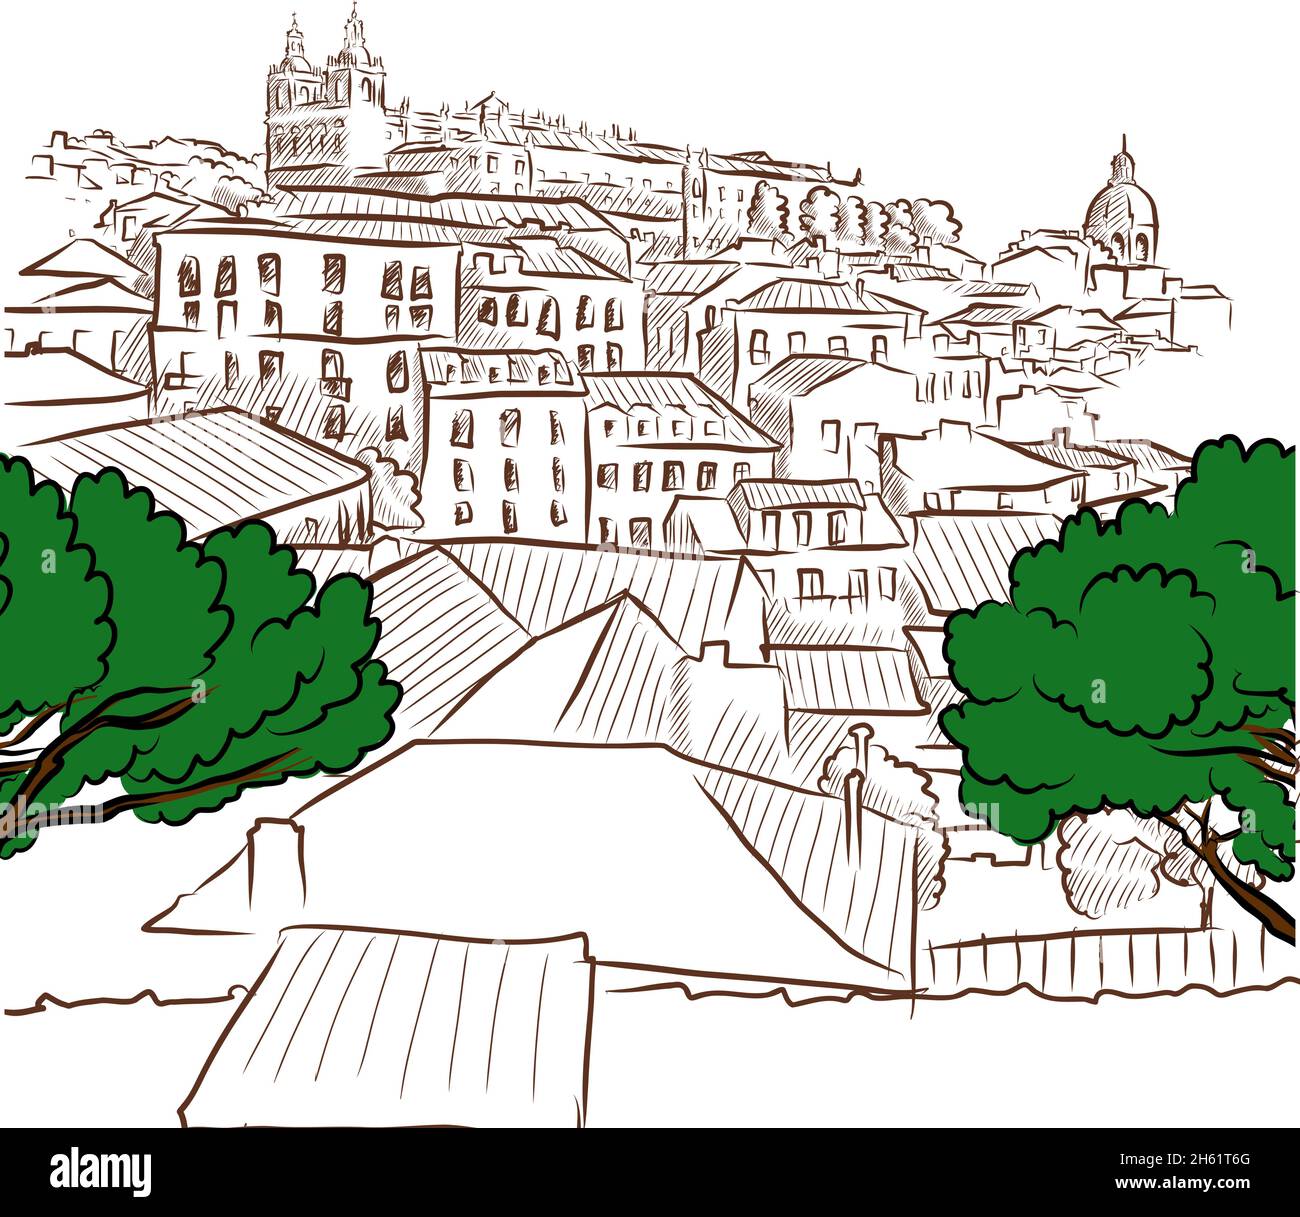 Tetti di Lisbona. Disegni vettoriali disegnati a mano da Lisboa, Portogallo. Illustrazione Vettoriale